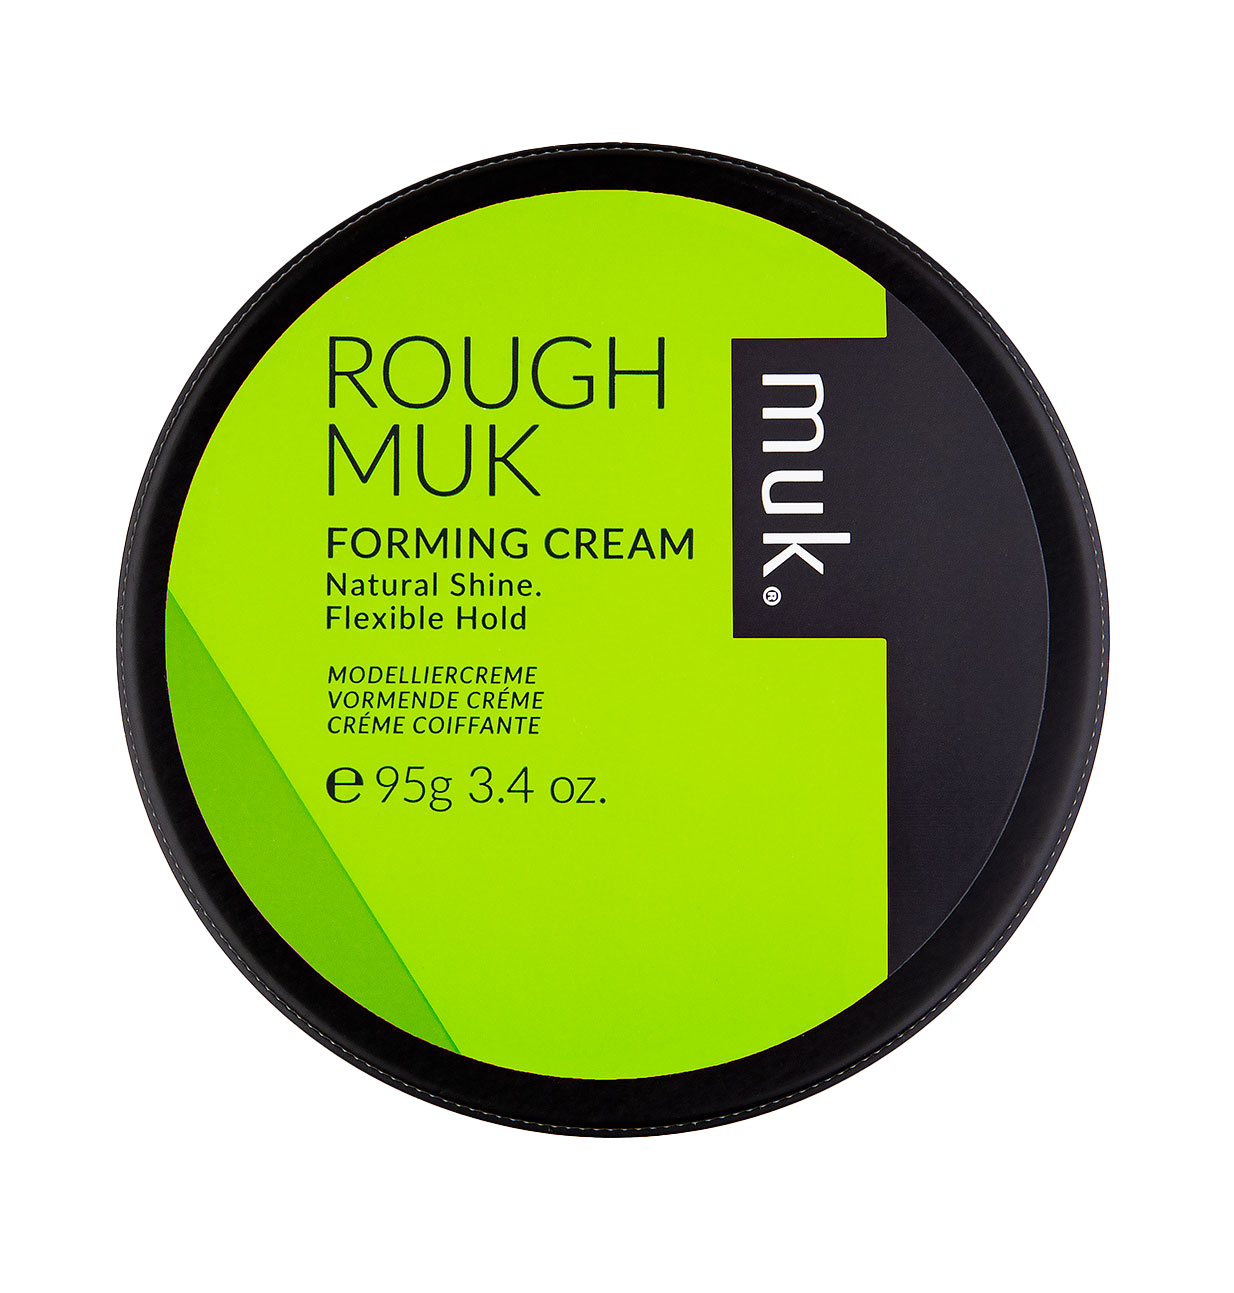 MUK ROUGH Forming Cream